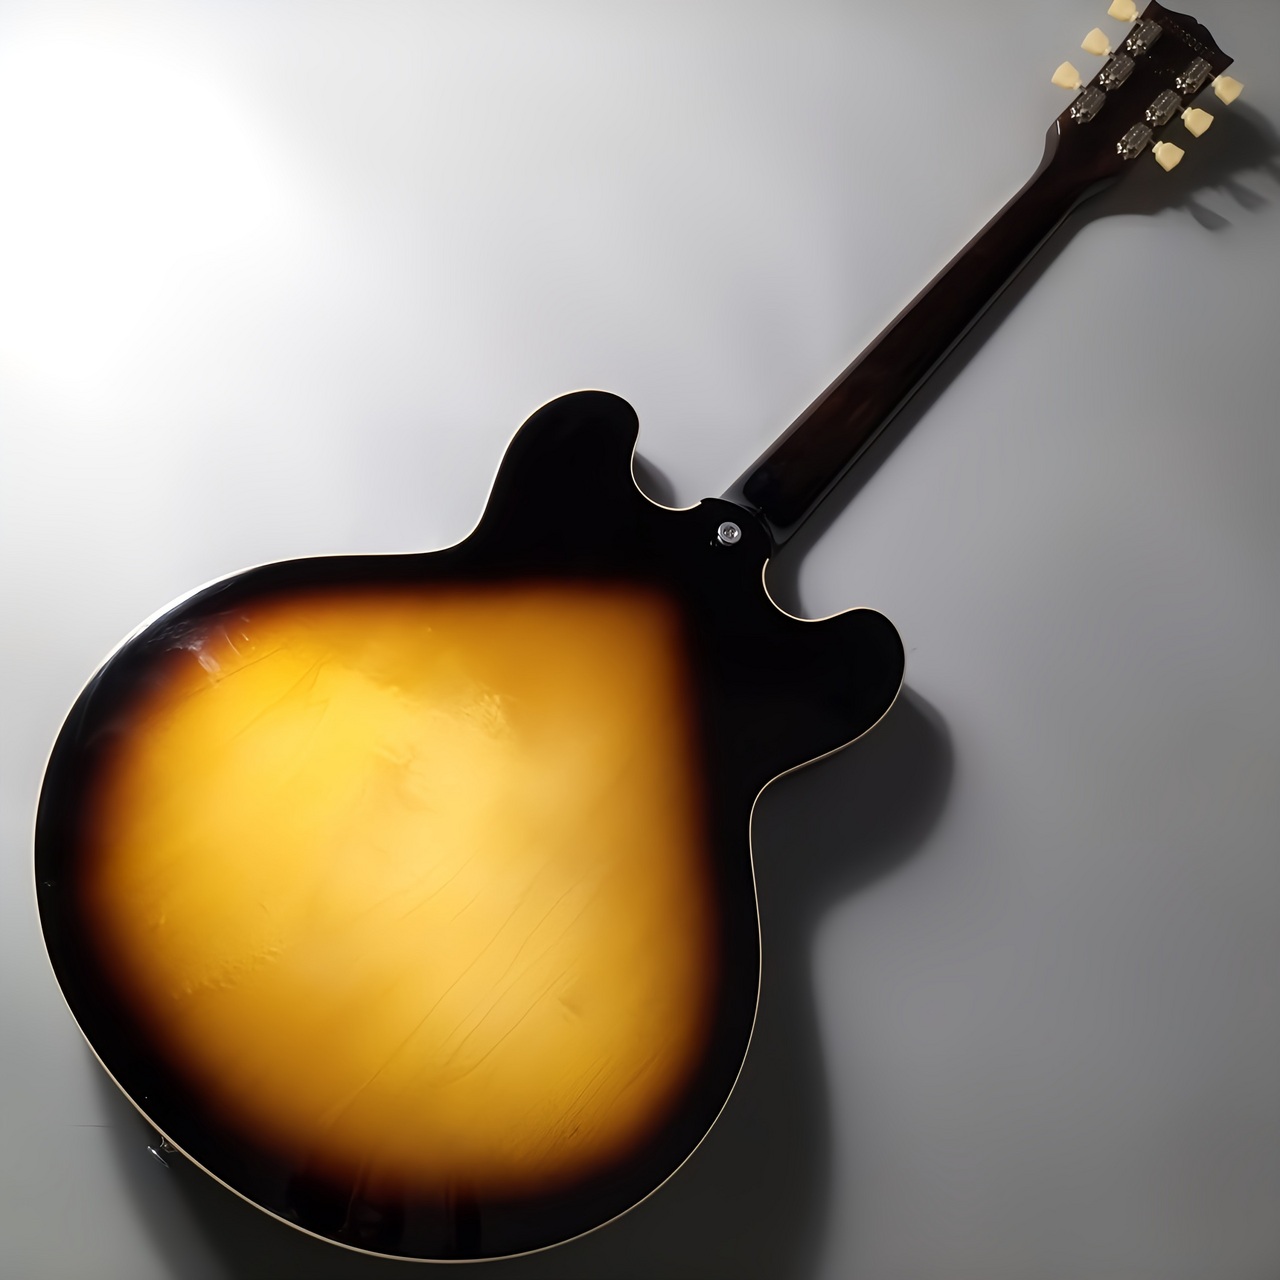 Gibson ES-335 Vintage Burst セミアコギター（新品/送料無料）【楽器 